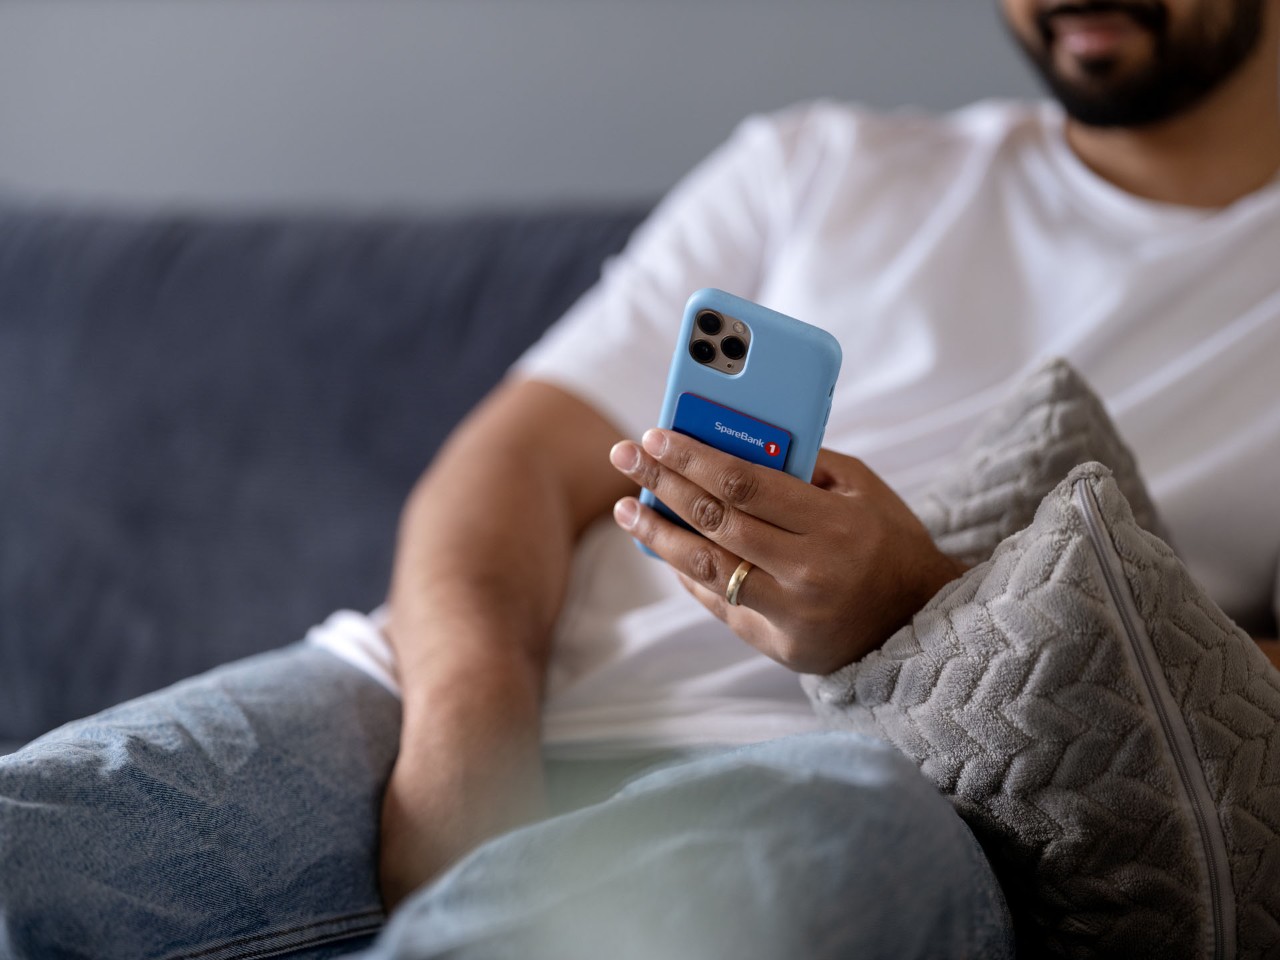 Mann i sofa med mobil og kredittkort